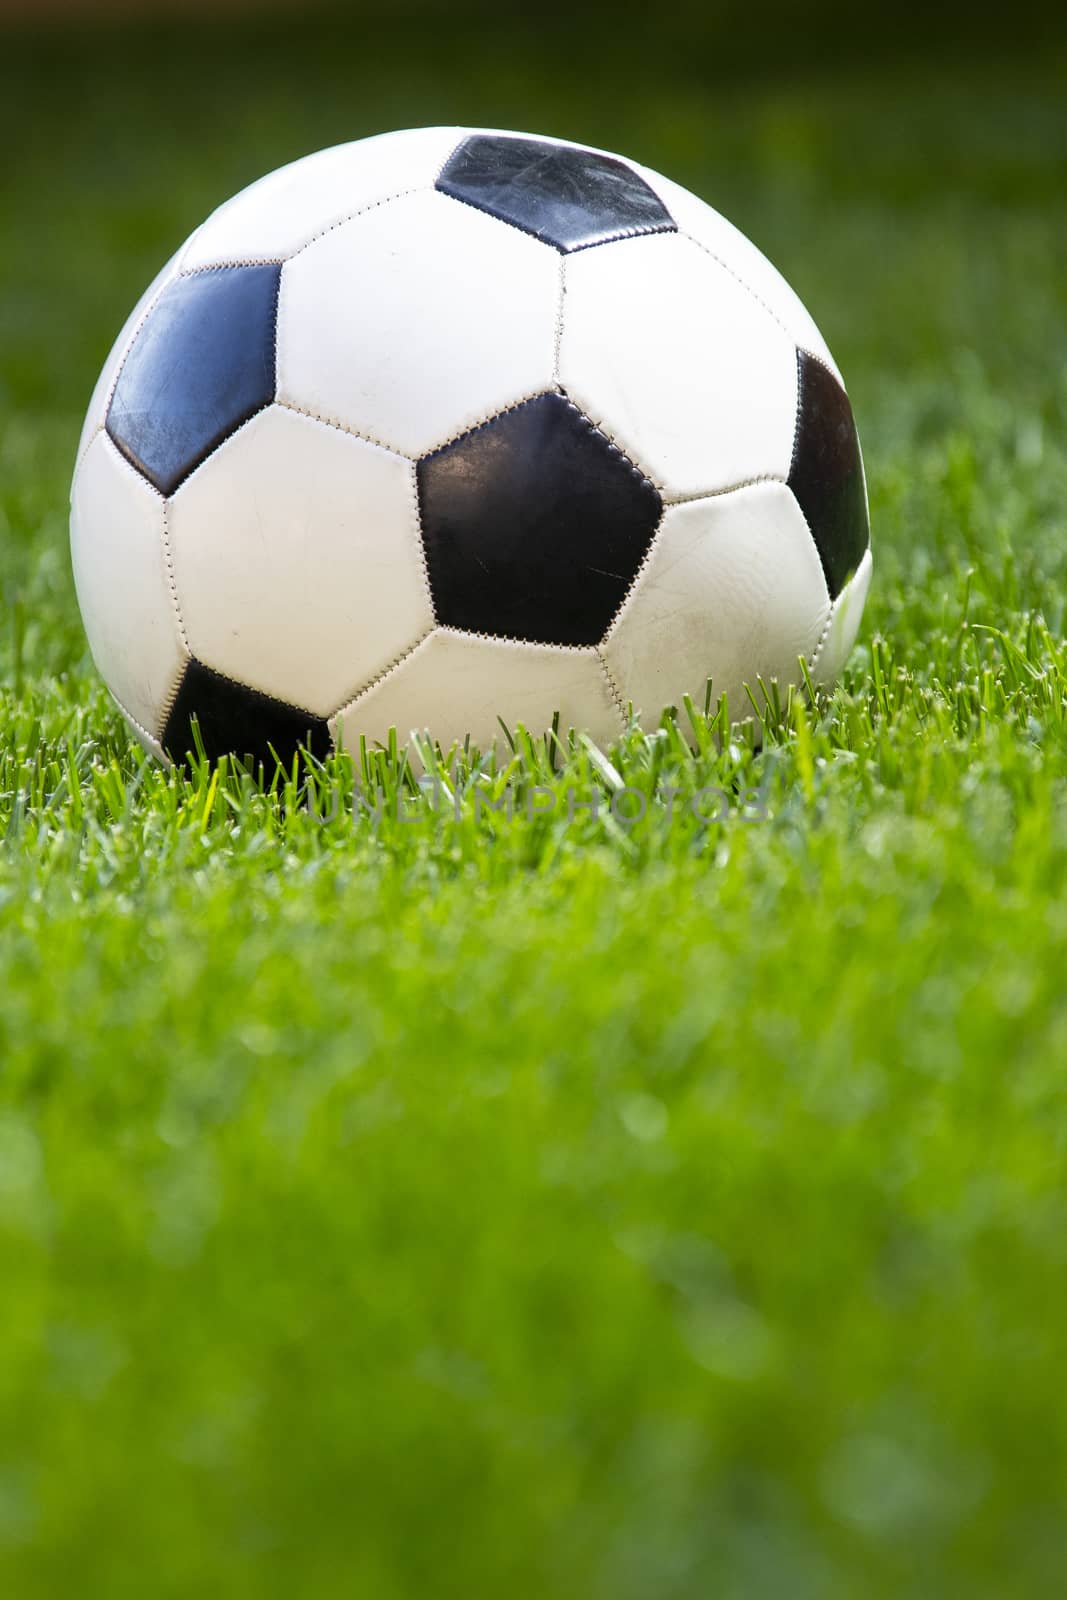 Football, soccer ball on a green grass by oasisamuel